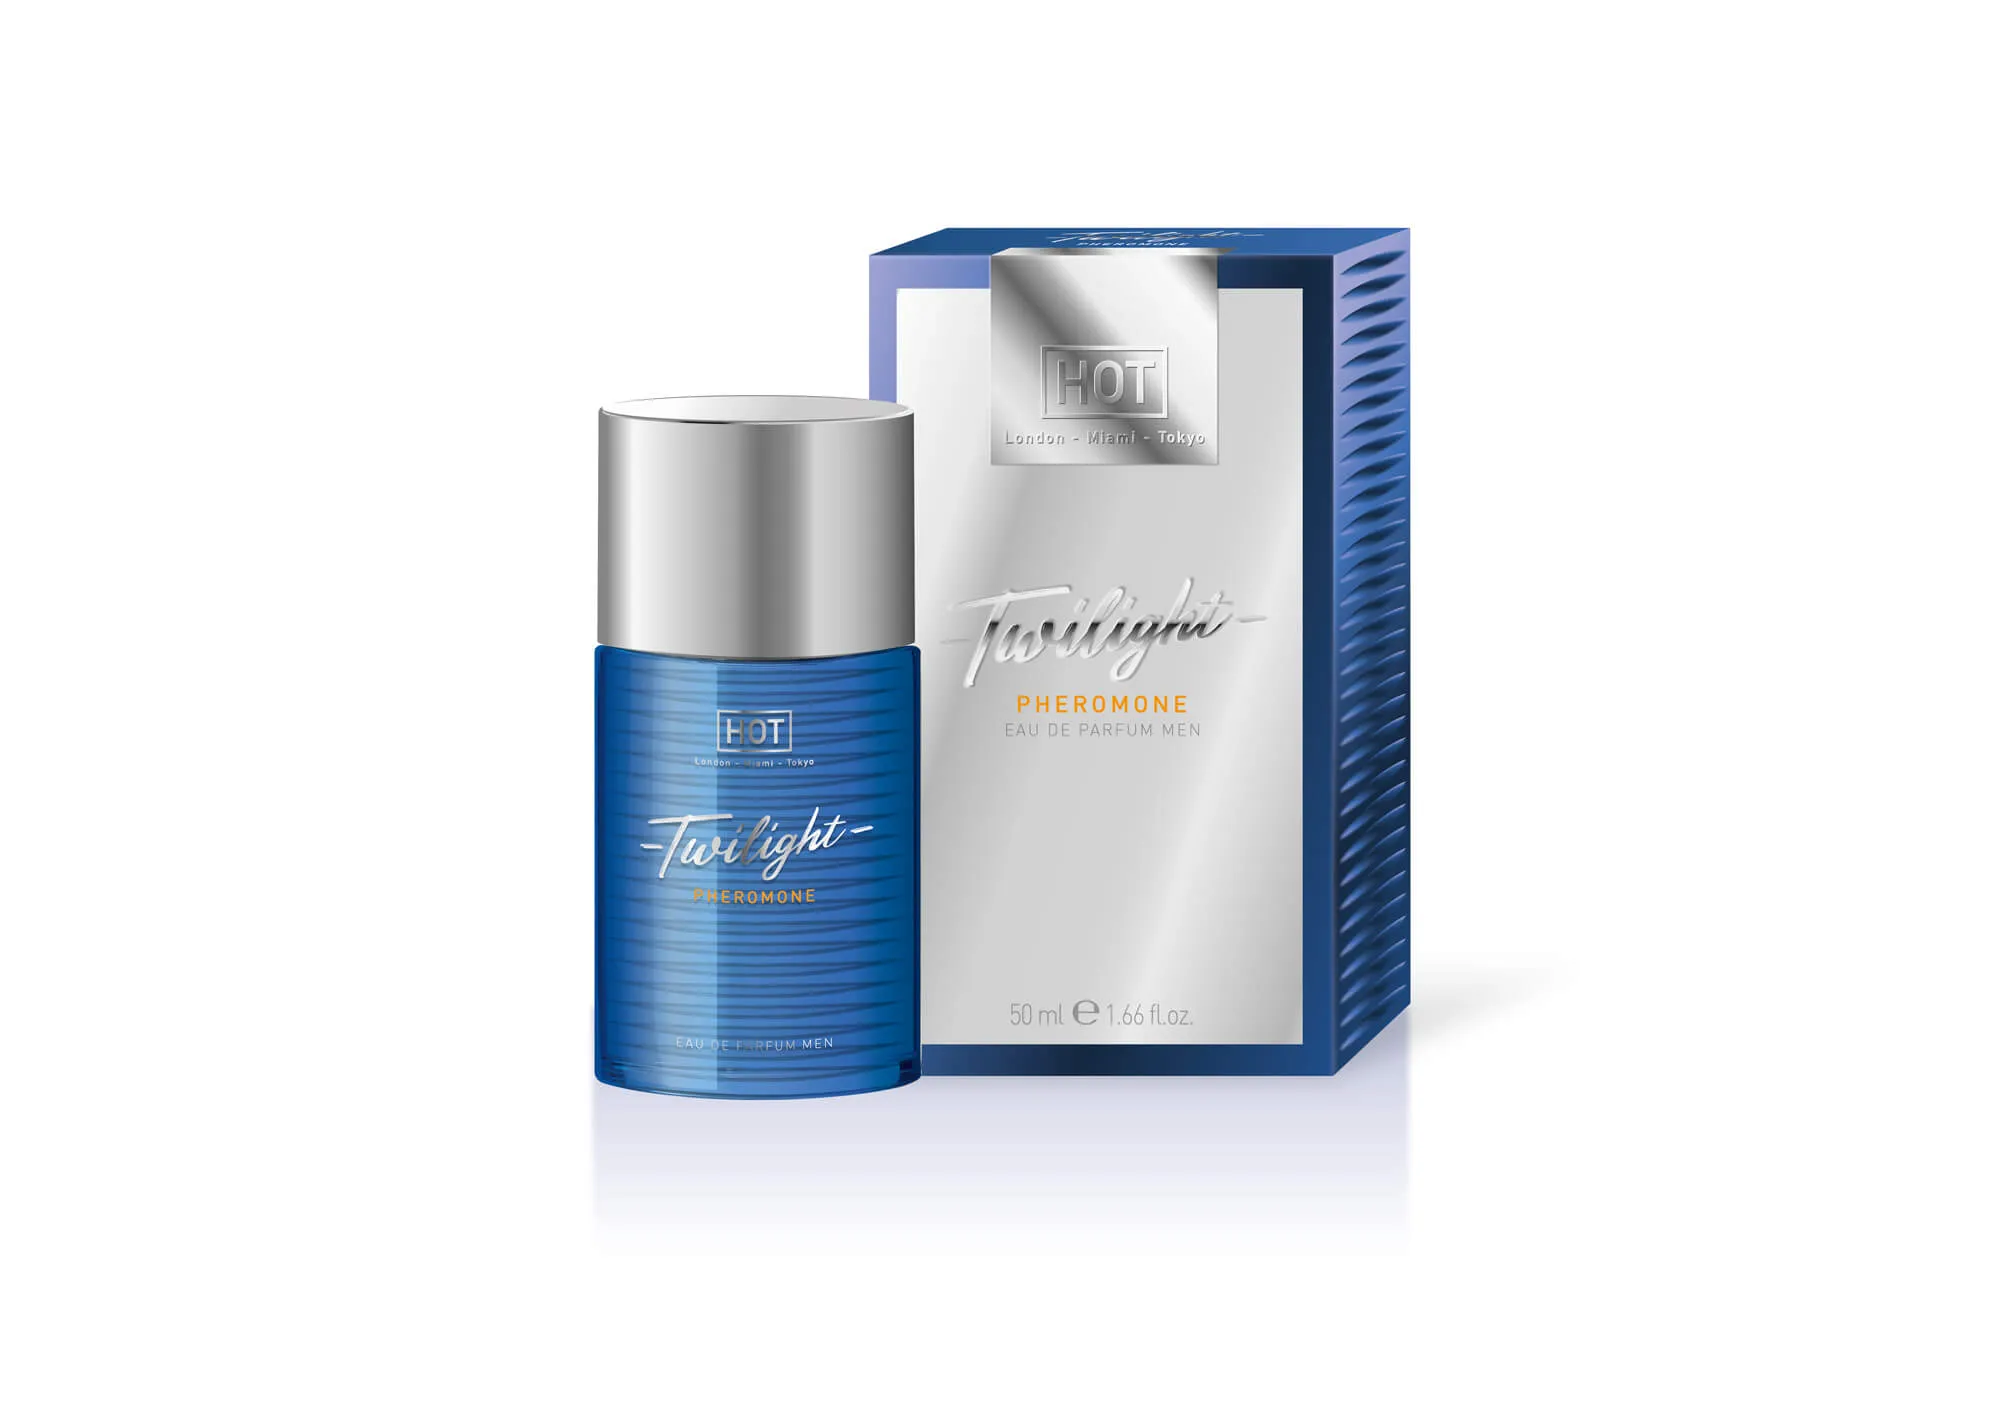 HOT Twilight - feromonový parfém pro muže (50ml) - parfemovaný